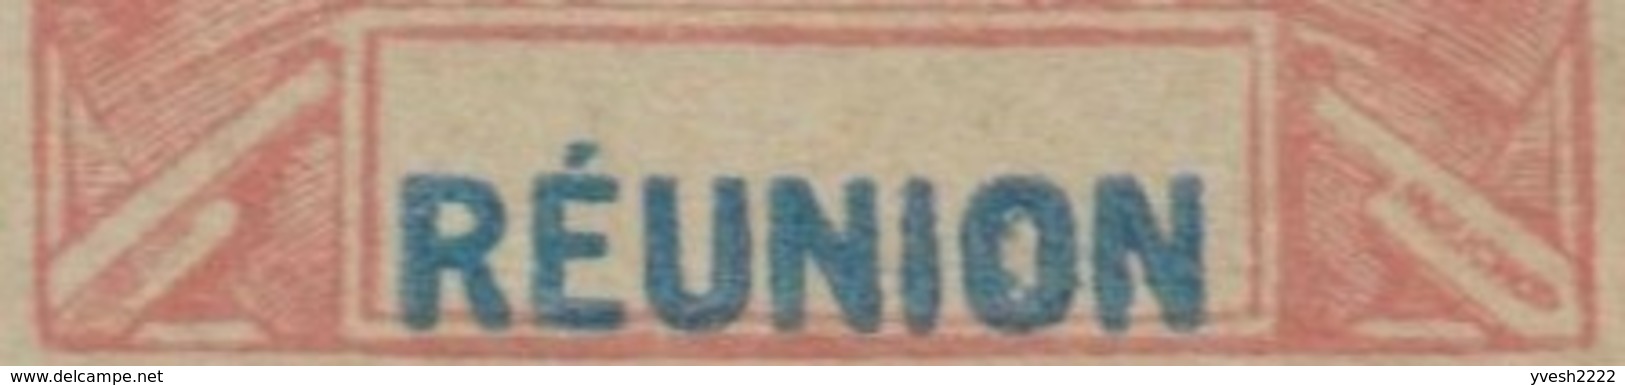 Réunion 1900. 3 Entiers Postaux, Cartes Avec Et Sans Réponse Payée. Curiosité, « Réunion » Décentré - Lettres & Documents